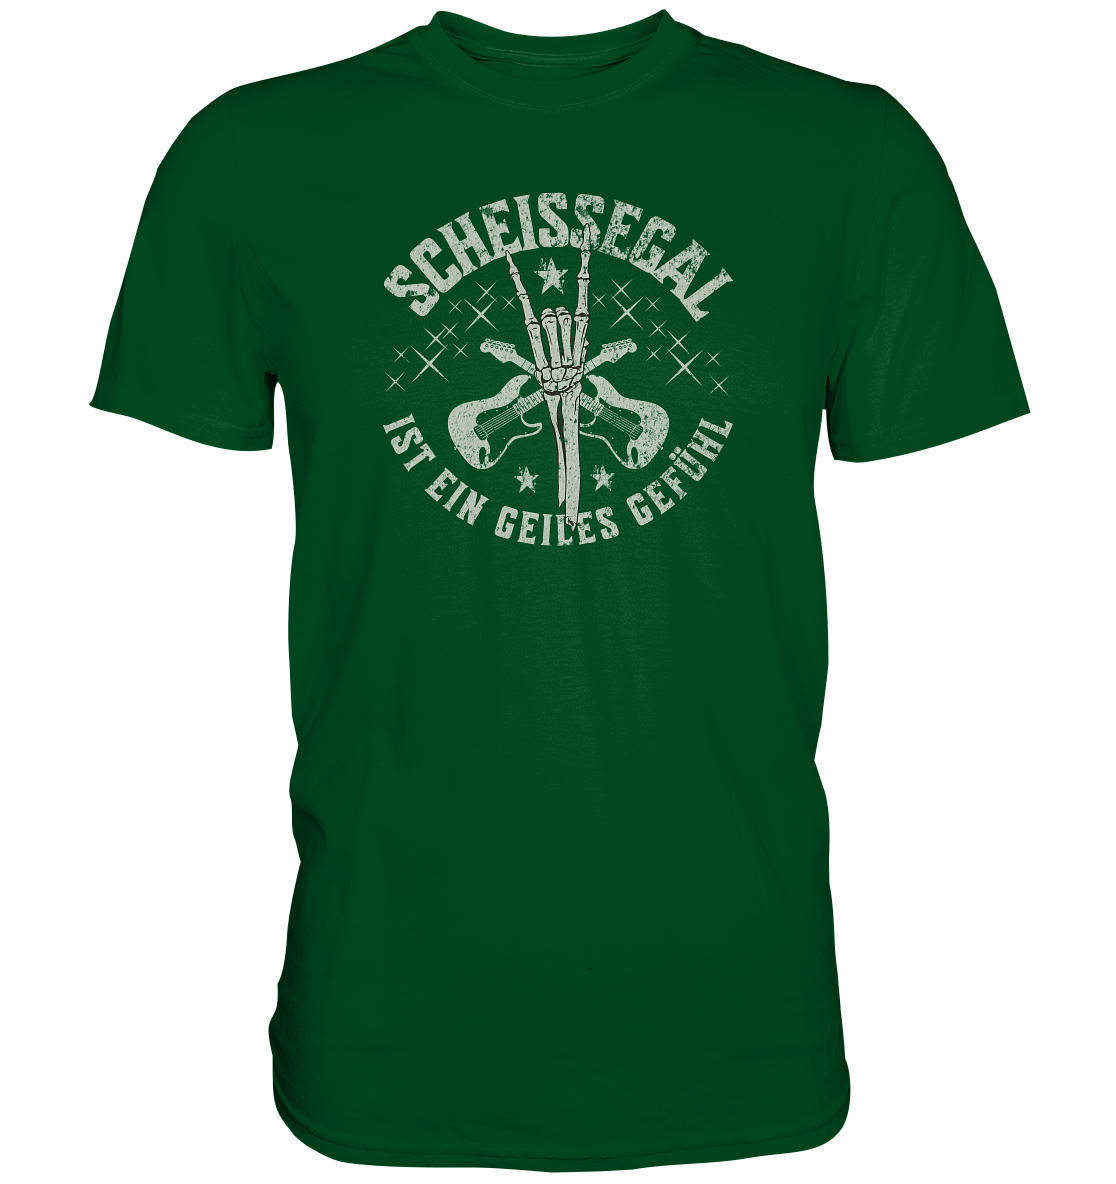 "Scheissegal_4" - Premium Shirt